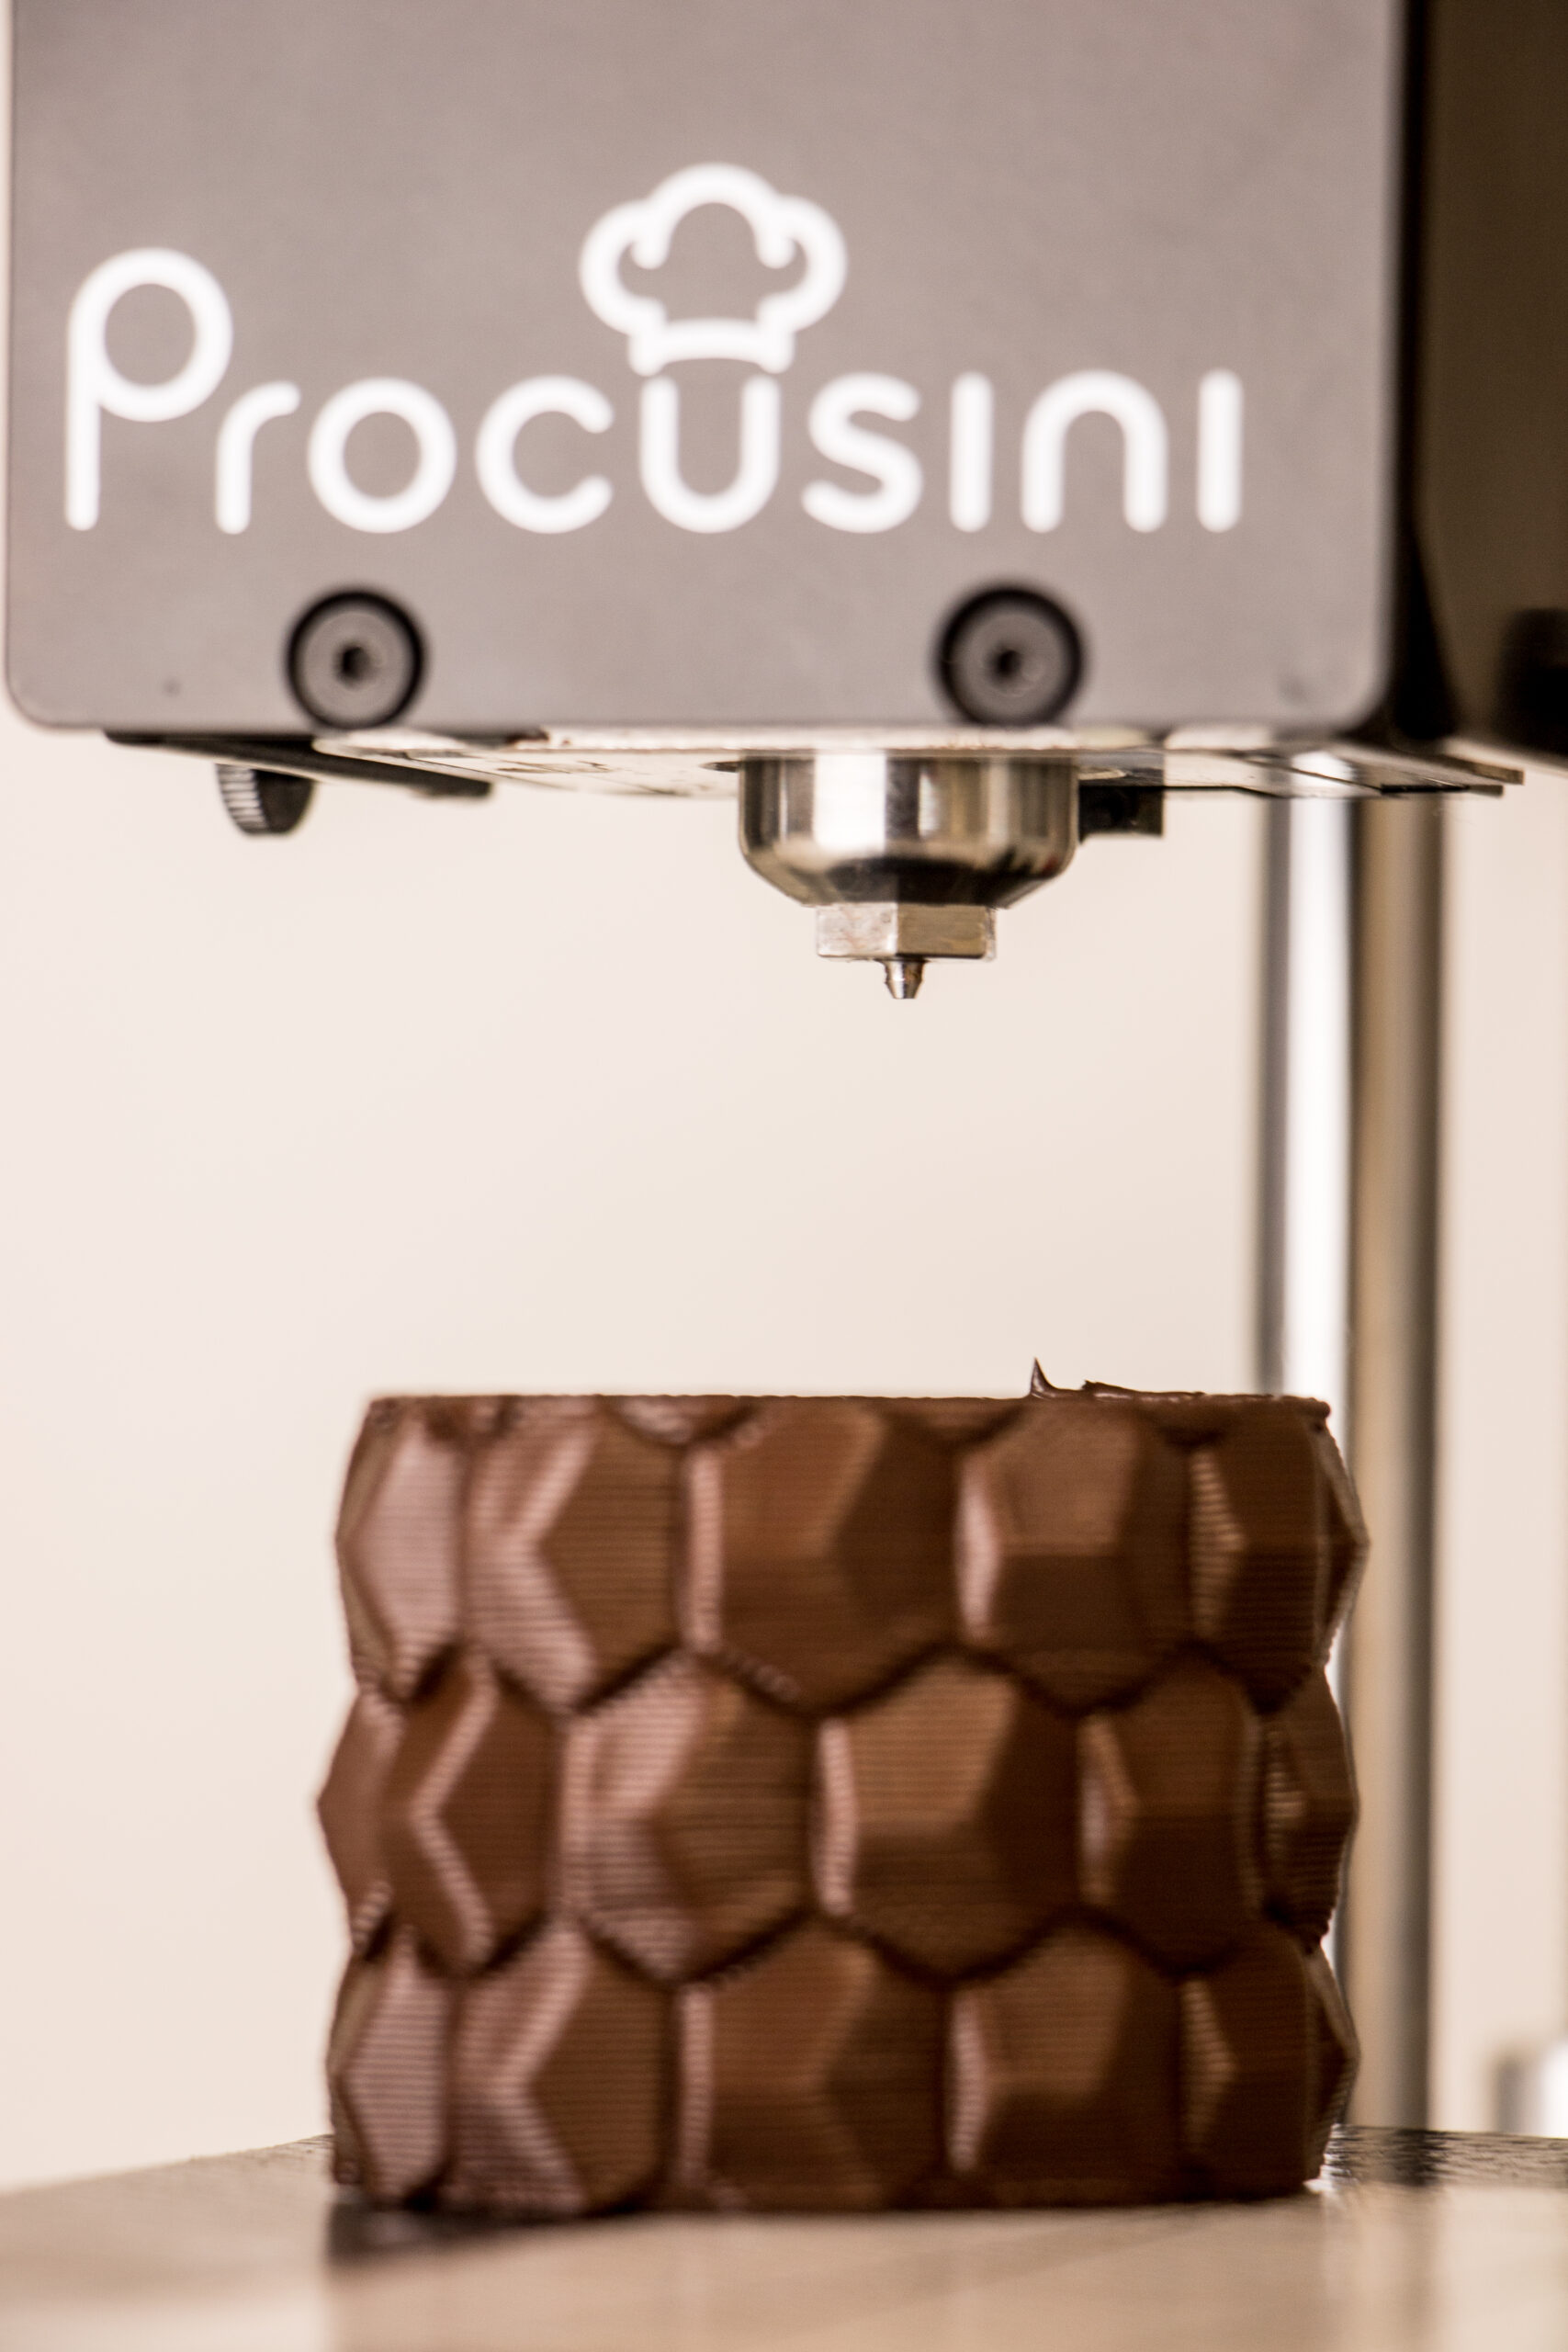 Procuisini - 3D-Drucker Lebensmittel